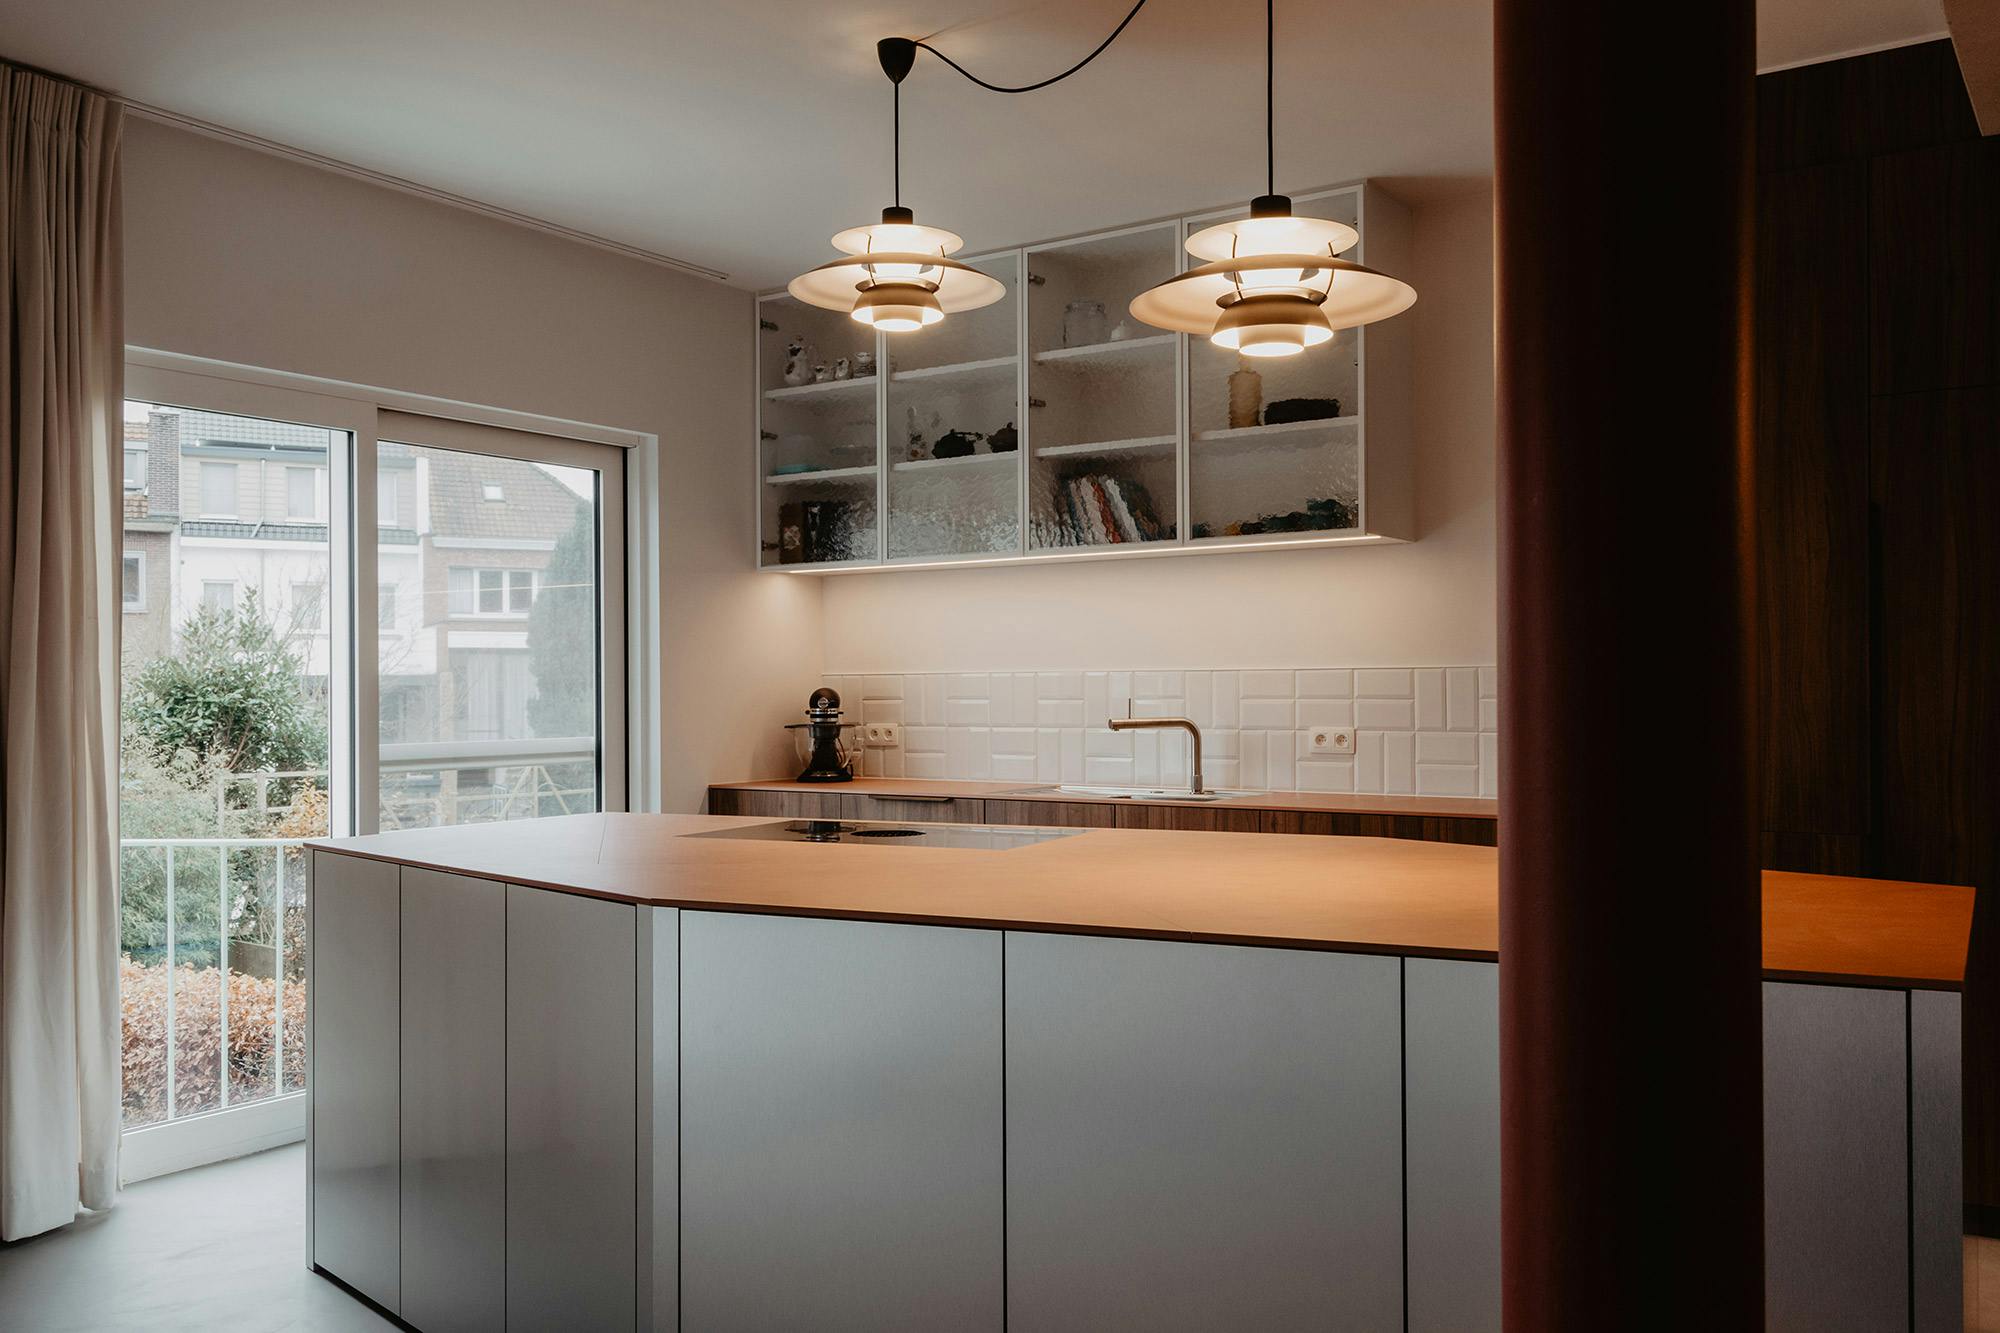 Bildnummer 46 des aktuellen Abschnitts von An open concept kitchen by MS2 Design Studio in a luxury South Beach condo von Cosentino Deutschland